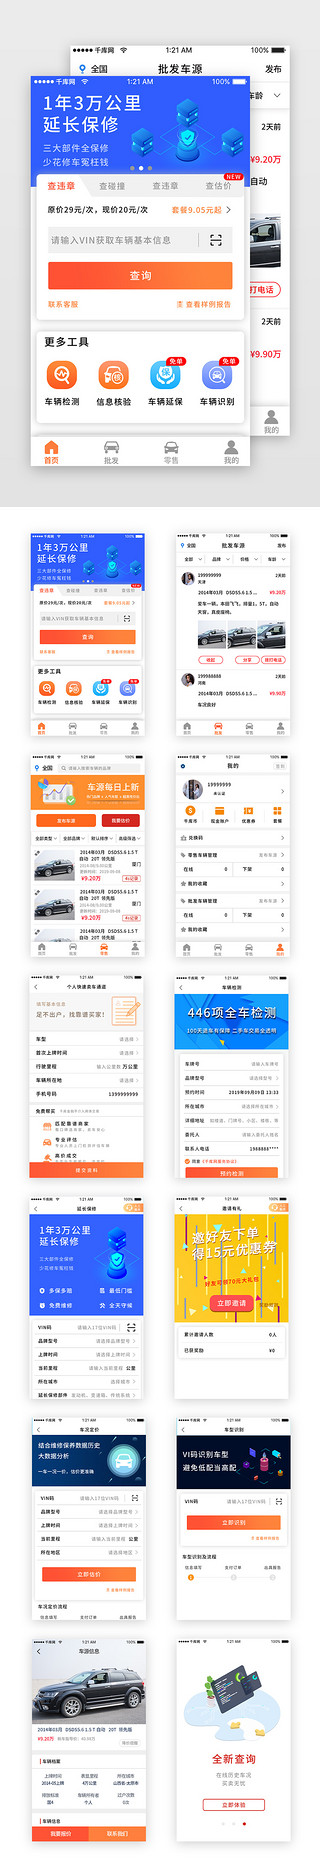 车辆监测UI设计素材_蓝色科技二手车销售车辆app套图